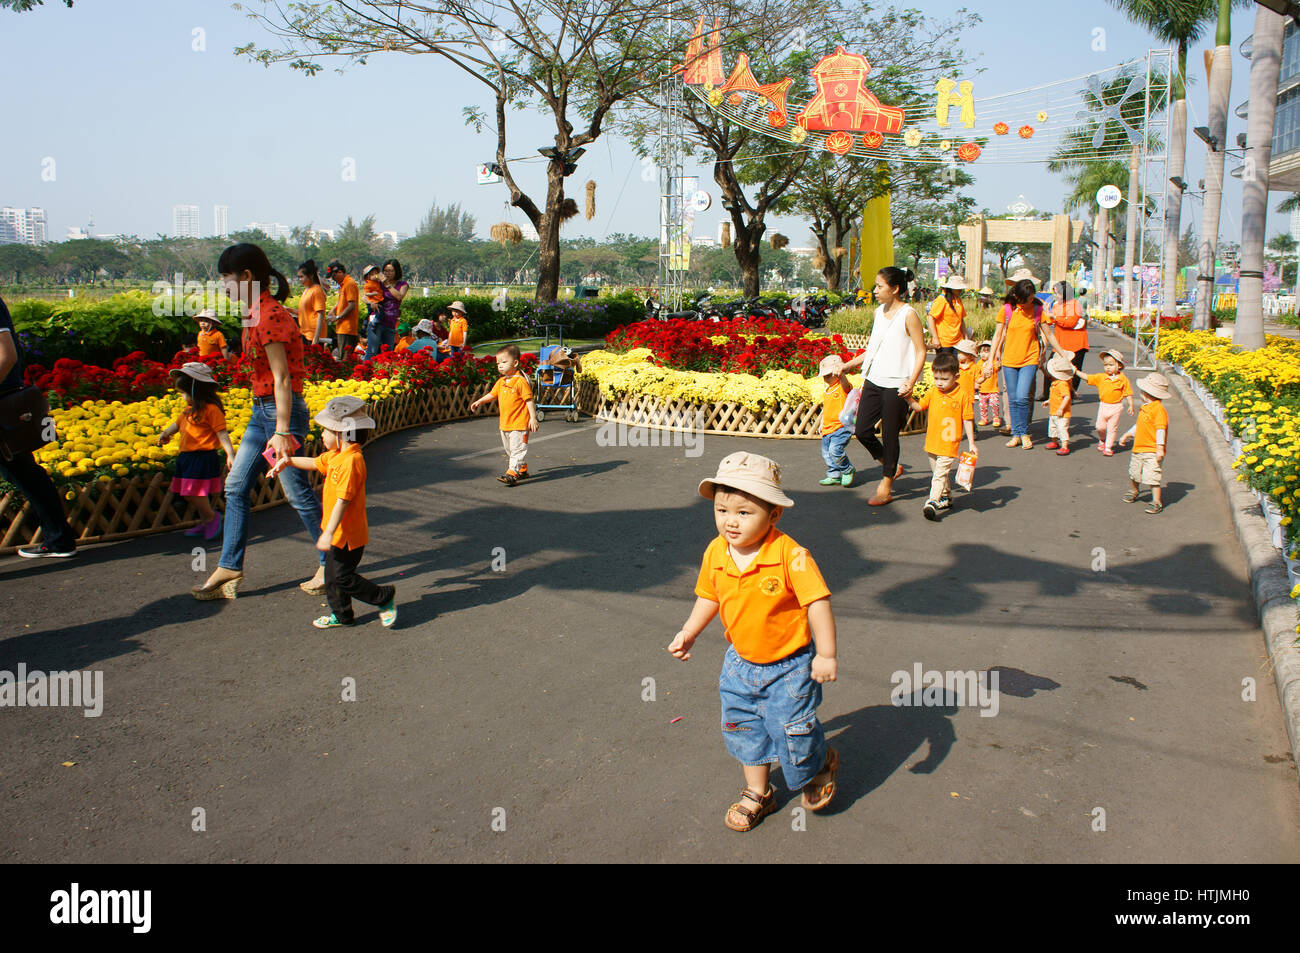 HO CHI MINH ville, VIET NAM- FEB12 : Groupe d'Asian kid non identifiés à l'activité extérieure de l'éducation préscolaire, petit garçon, fille en uniforme, Vietnamien childre Banque D'Images